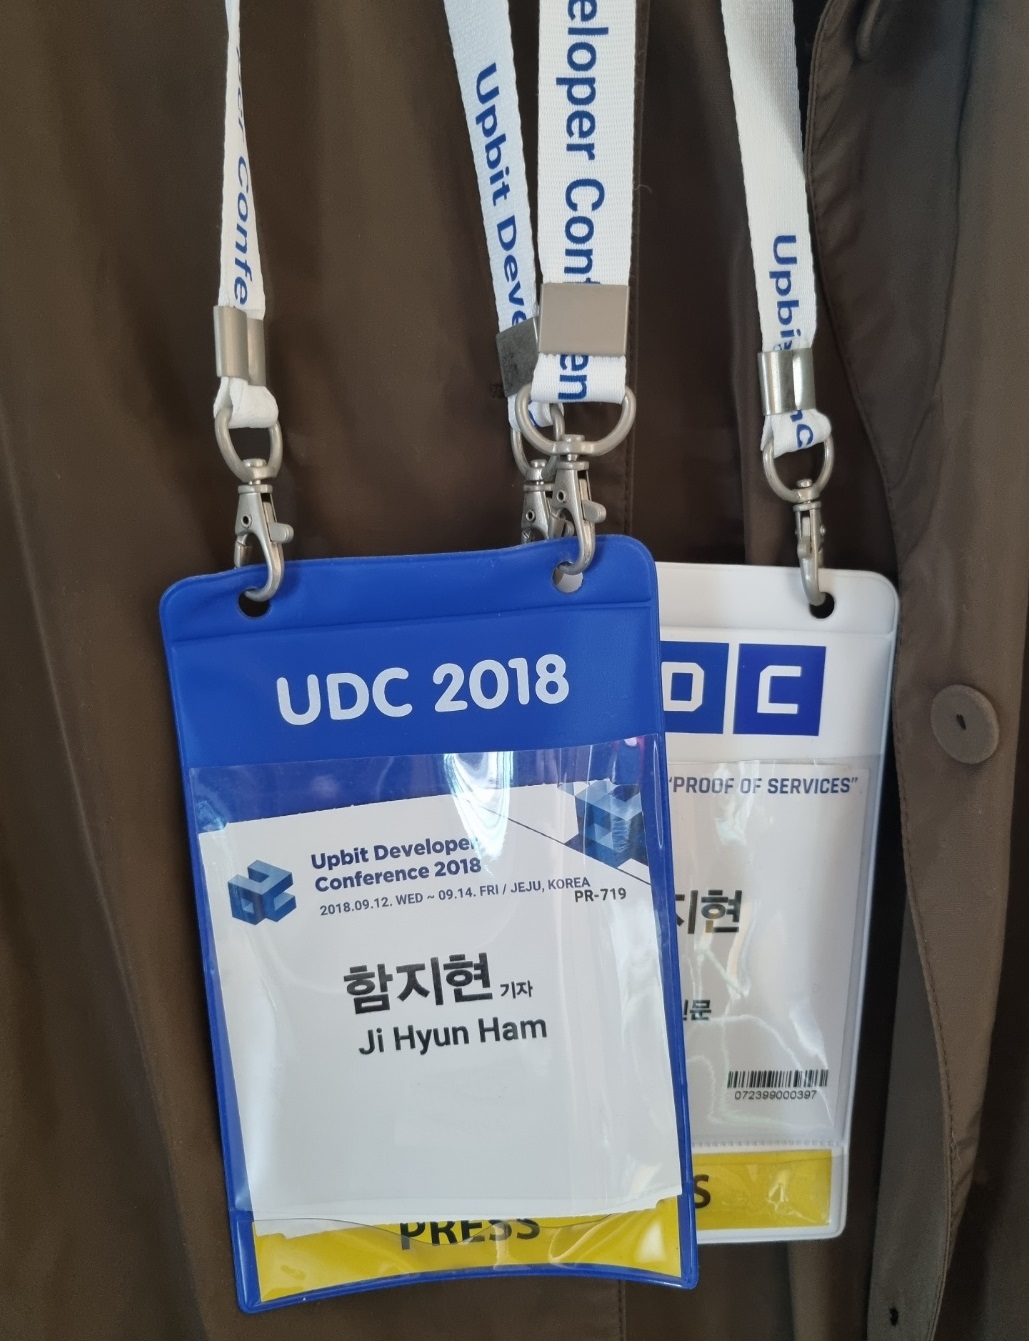 UDC 2018과 UDC 2019 프레스 배지. 출처=함지현/코인데스크 코리아